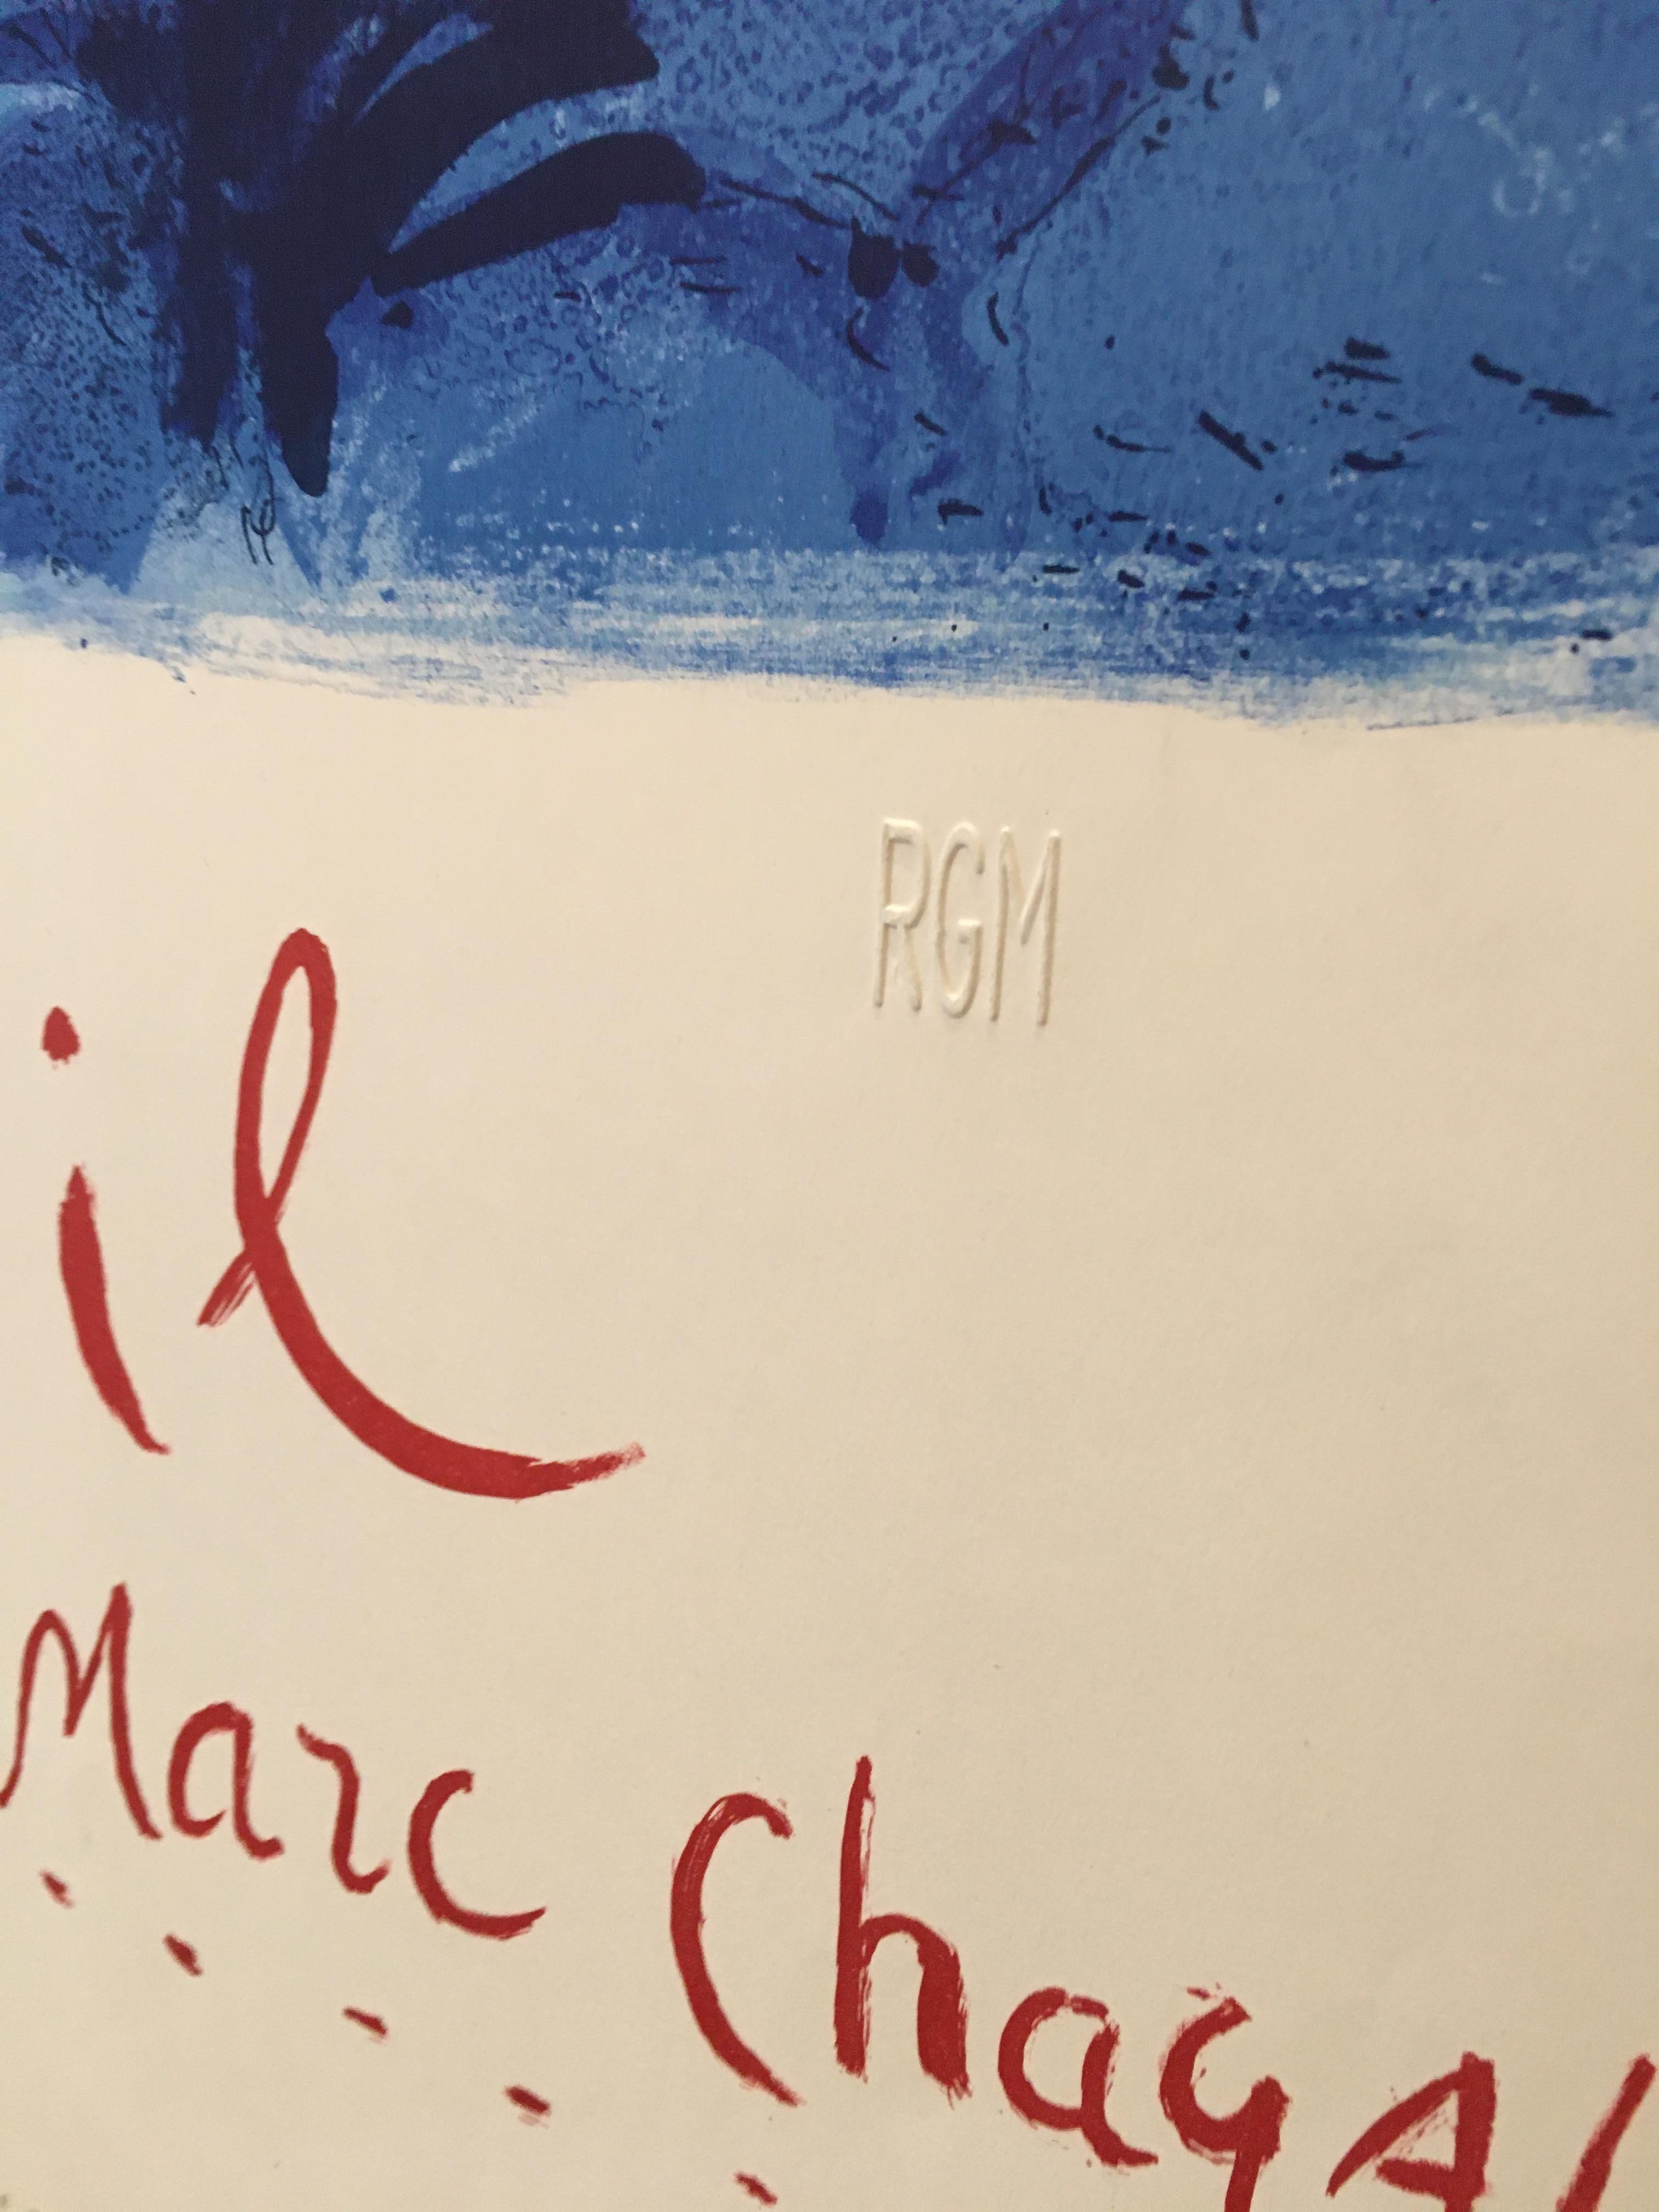 Il s'agit d'une édition de luxe comportant un cachet à l'aveugle avec les inscriptions RGM. Cette affiche a été imprimée en France par et pour le gouvernement français.
Marc Chagall était un artiste franco-russe d'origine juive biélorusse.